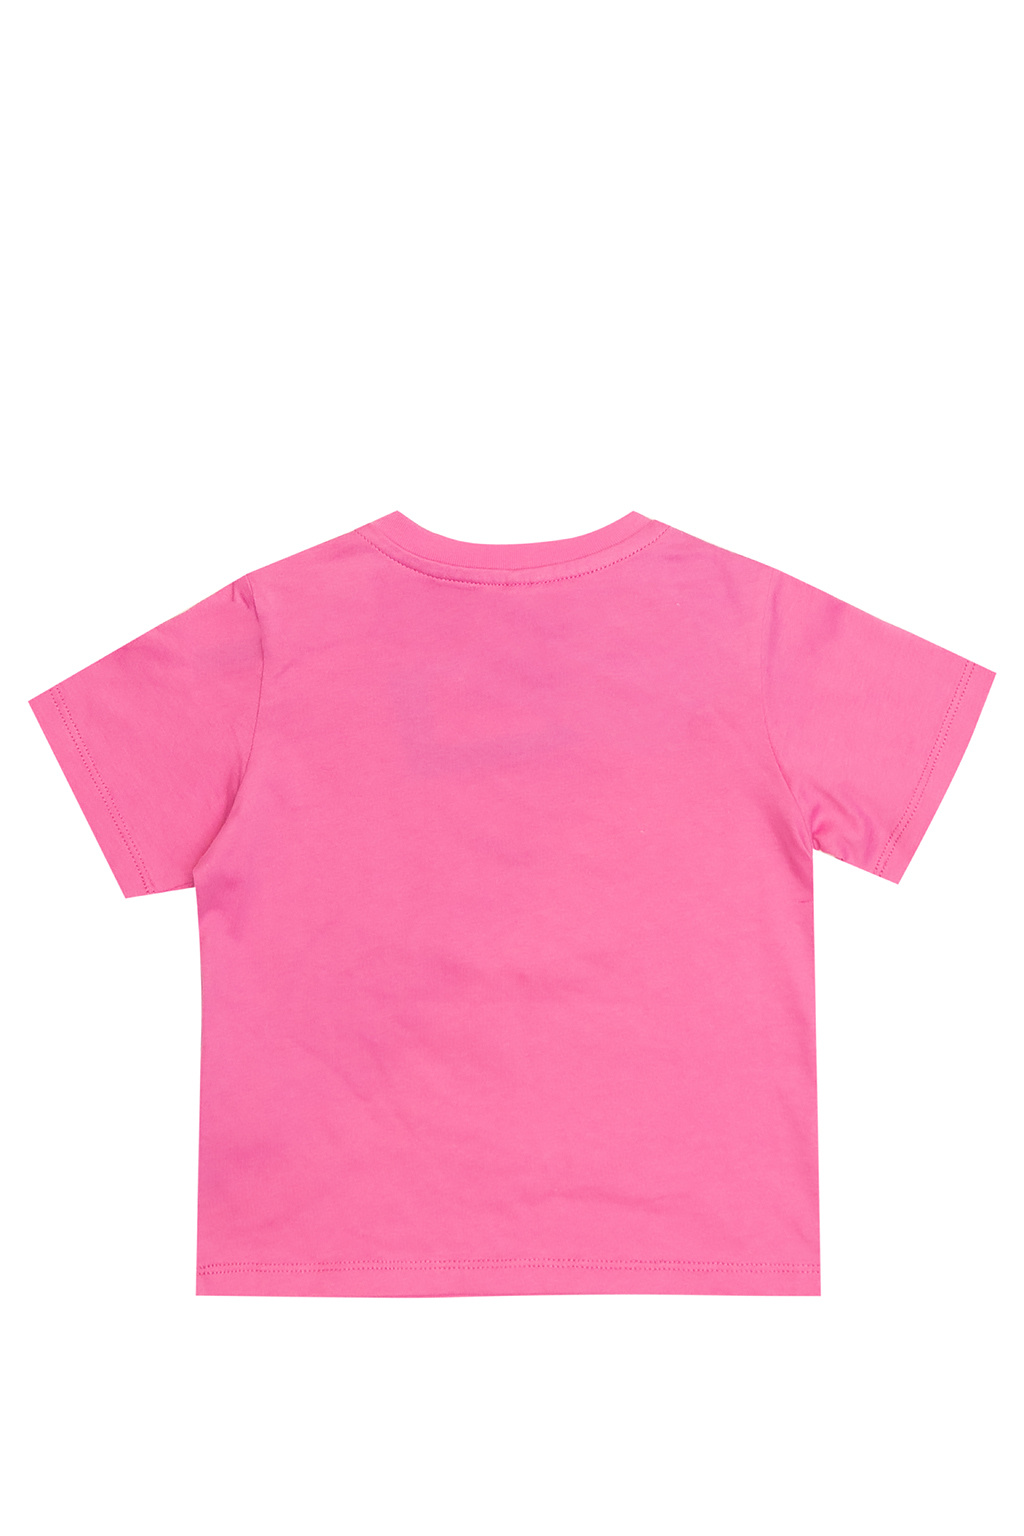 stella Rose McCartney Kids Printed T-shirt